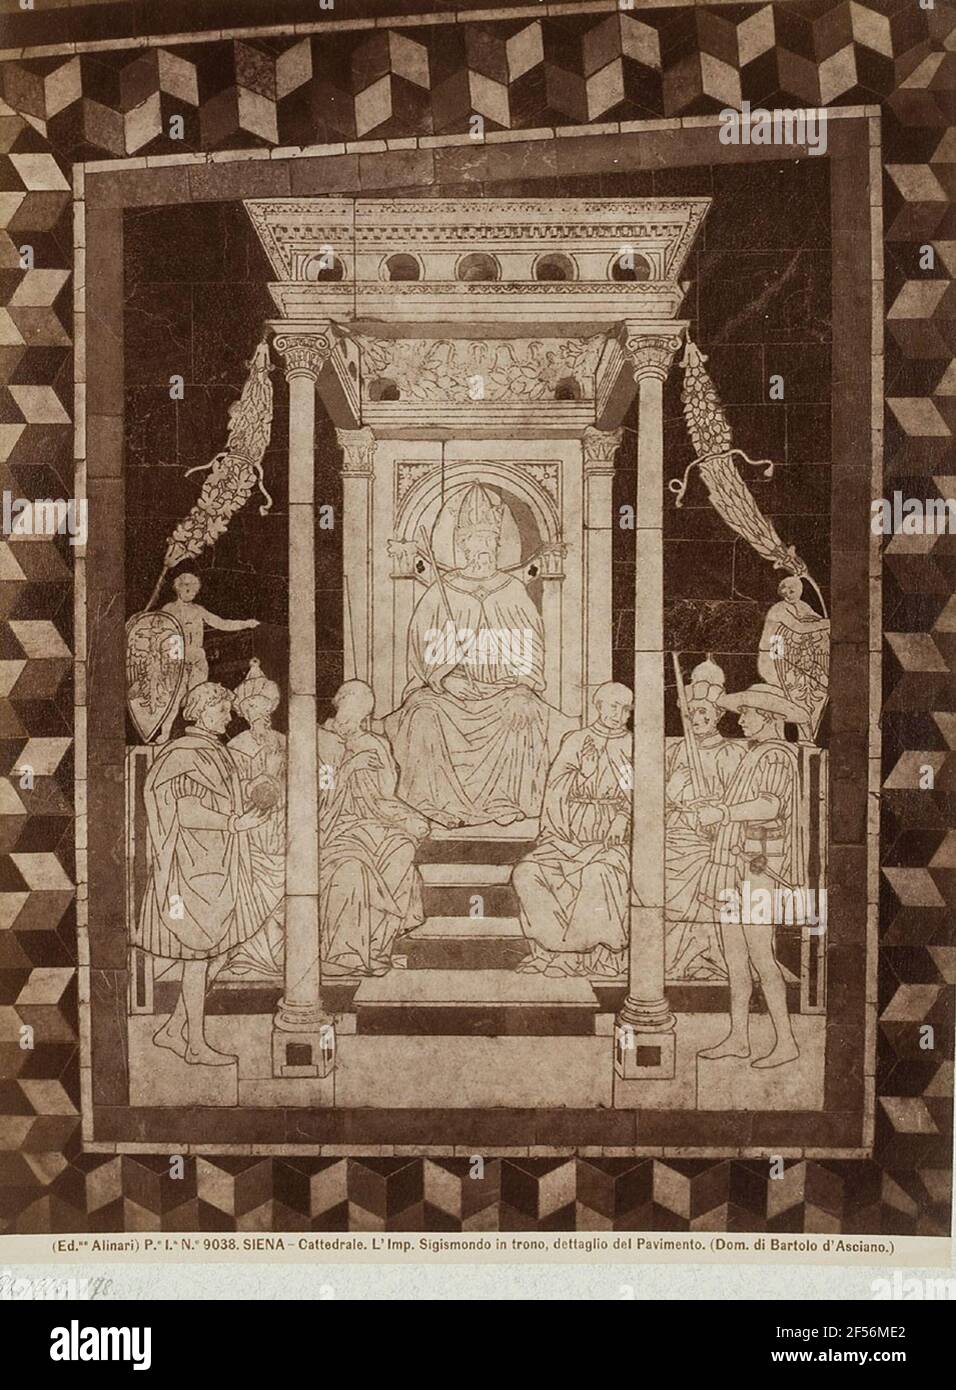 Domenico di Bartolo d'Asciano: Kaiser Sigismondo sul trono, particolare del pavimento, Cattedrale di Siena. . Foto Stock